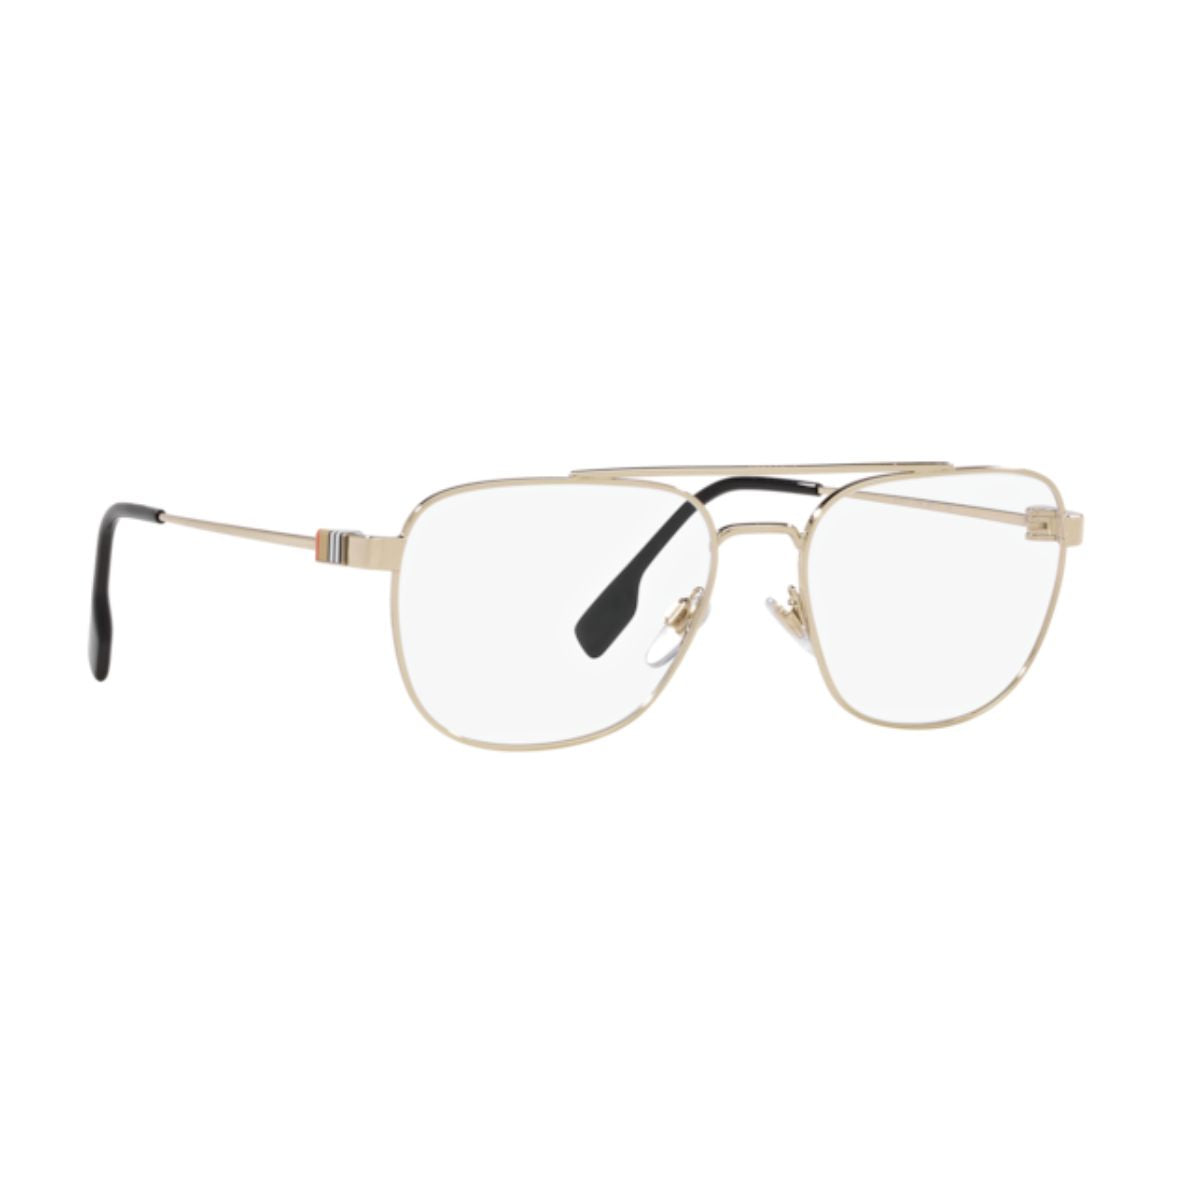 "best burberry 1377 1109 optical frame &eyeglasses frame for men's online in india"